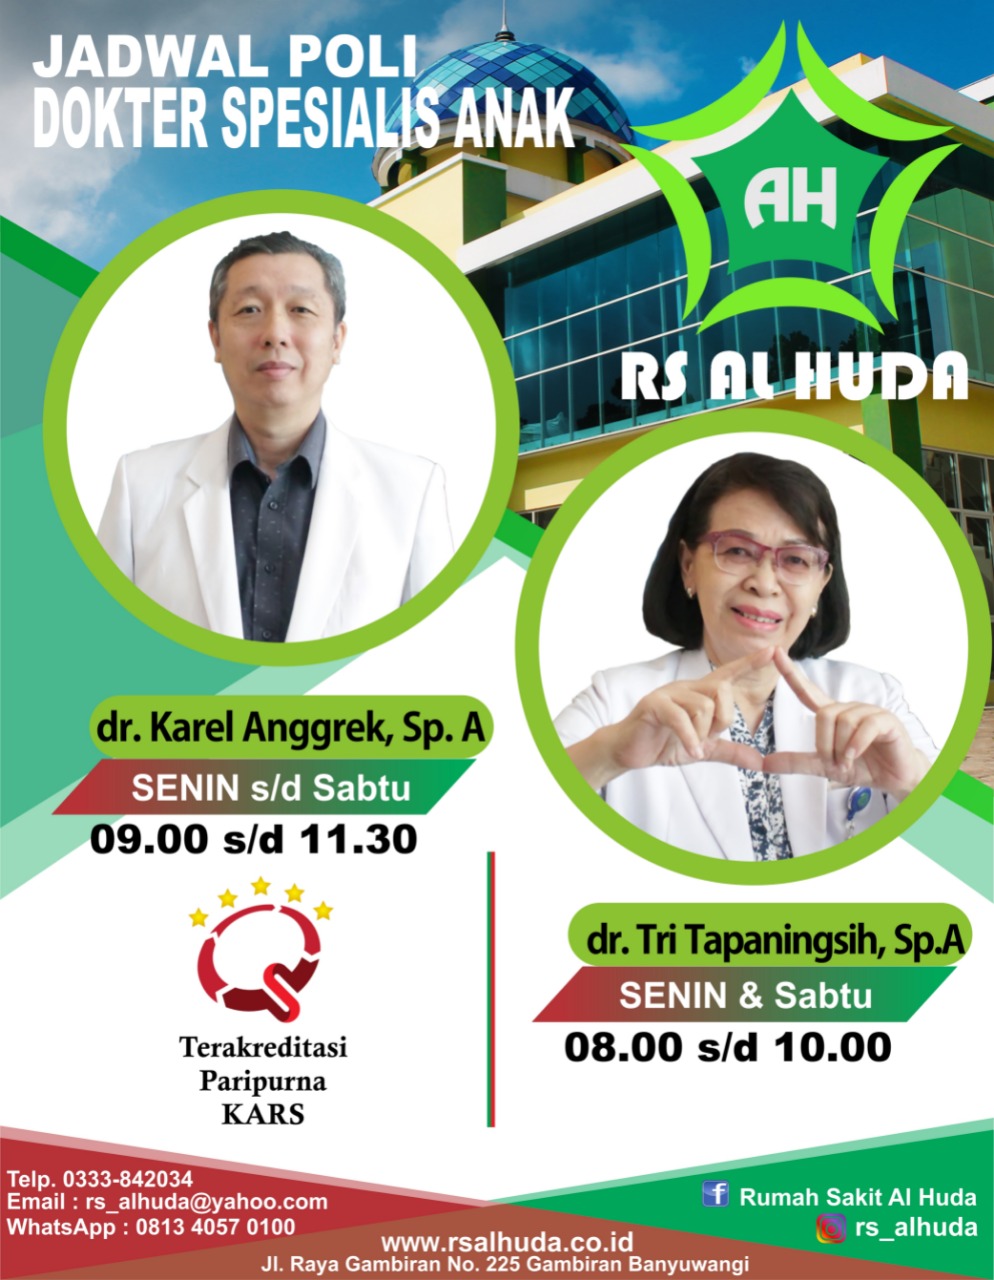 SPESIALIS ANAK : dr. Tri Tapaningsih, Sp. A dan dokter Karel Anggrek, Sp. A, Dokter Spesialis Anak DI RS Al Huda.